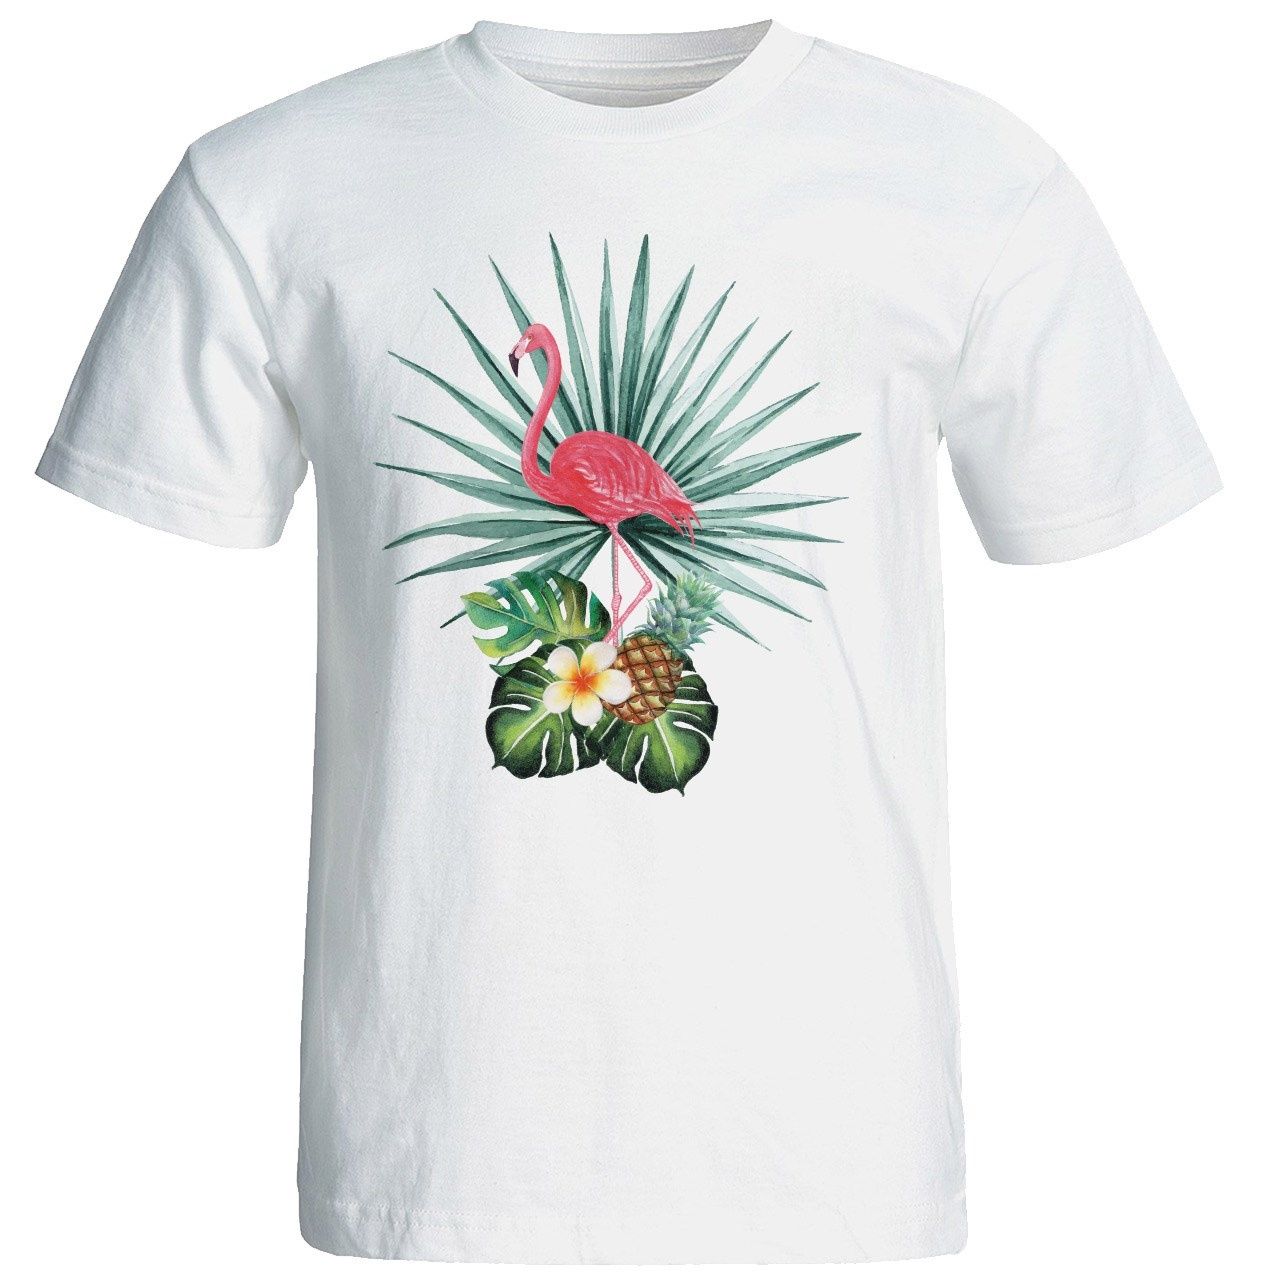 تی شرت آستین کوتاه زنانه شین دیزاین طرح فلامینگو کد 4421 -  - 1